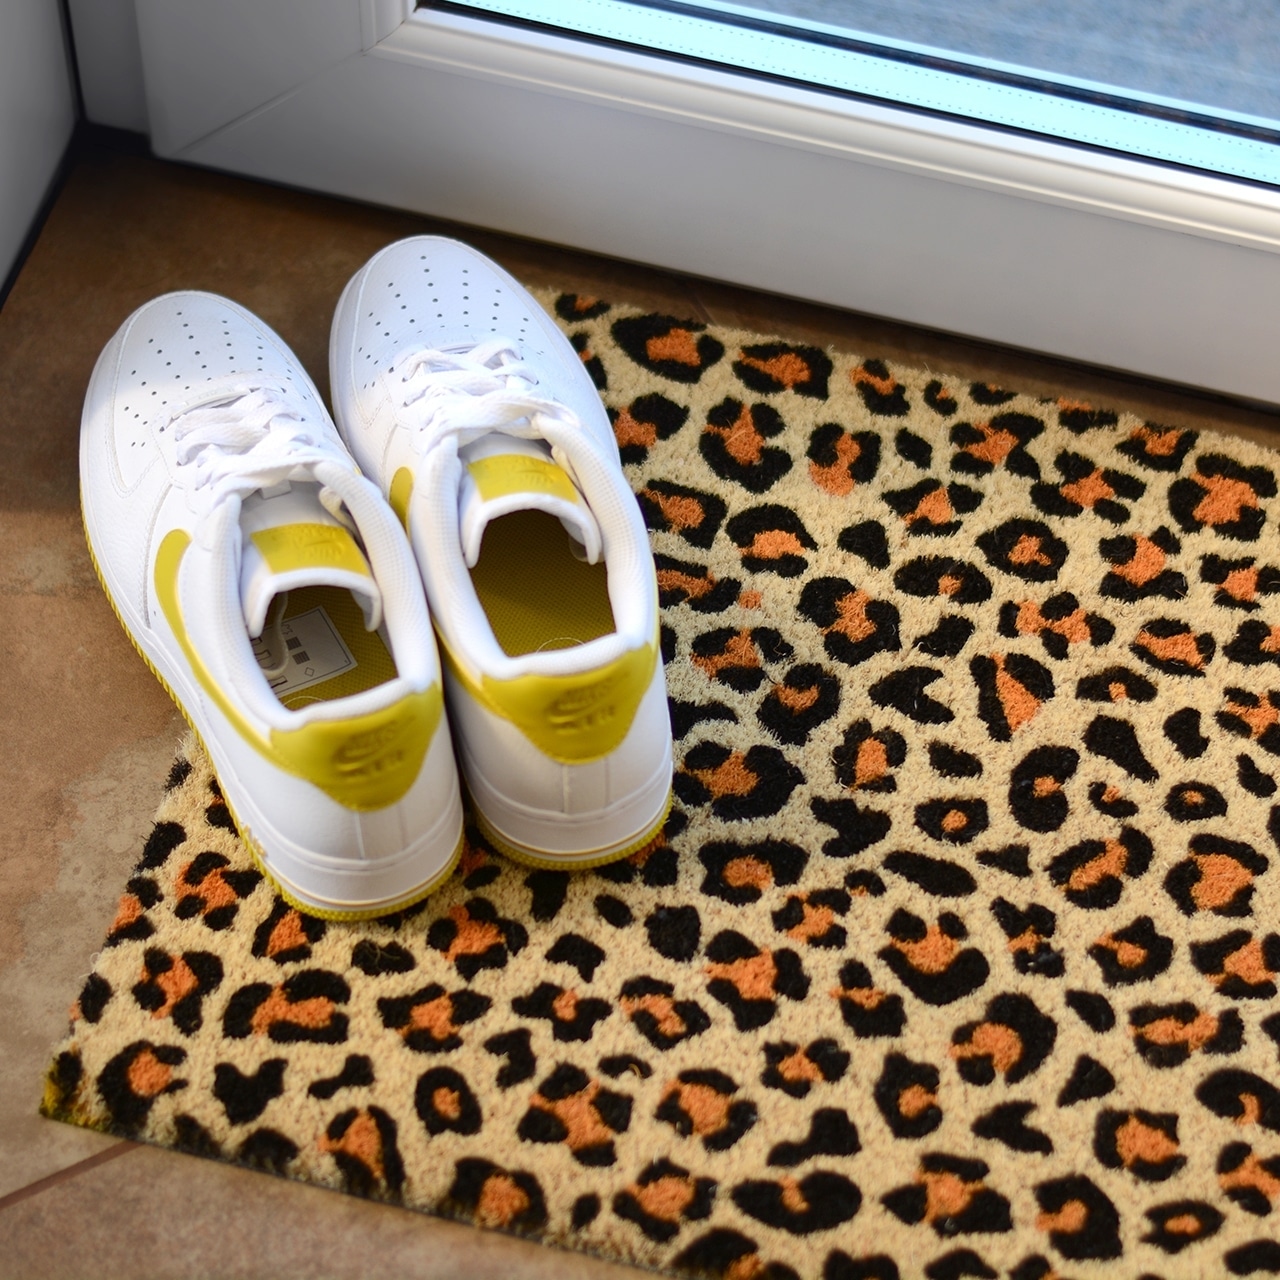 Leopard Print Front Doormat